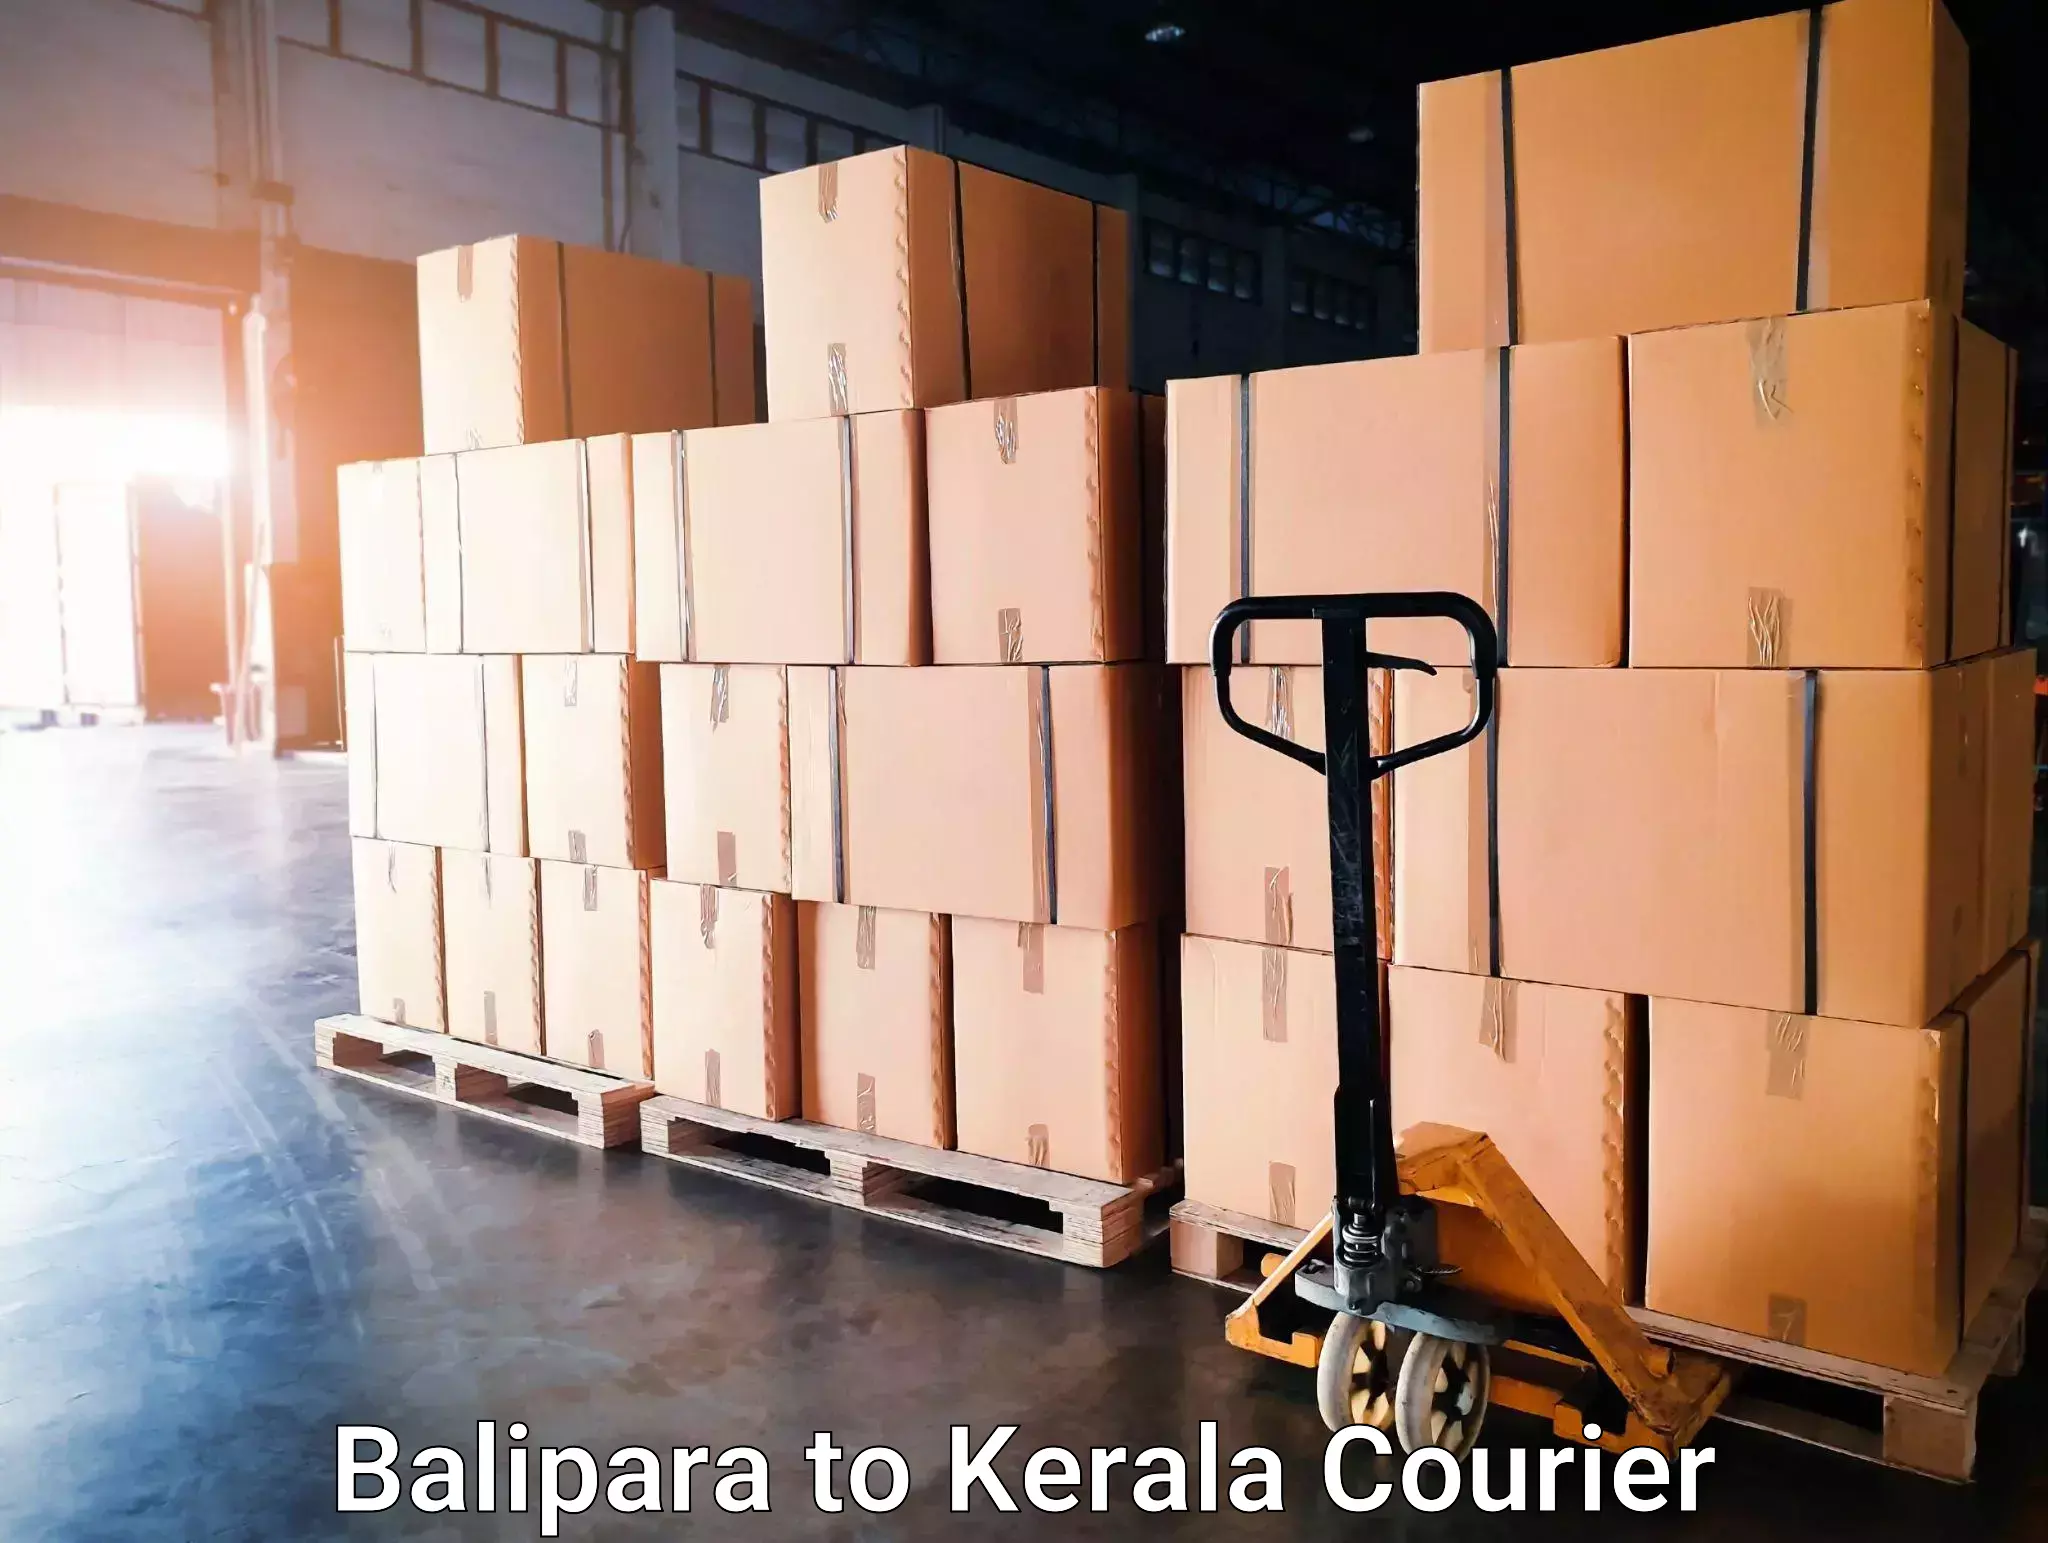 Courier service comparison Balipara to Muvattupuzha